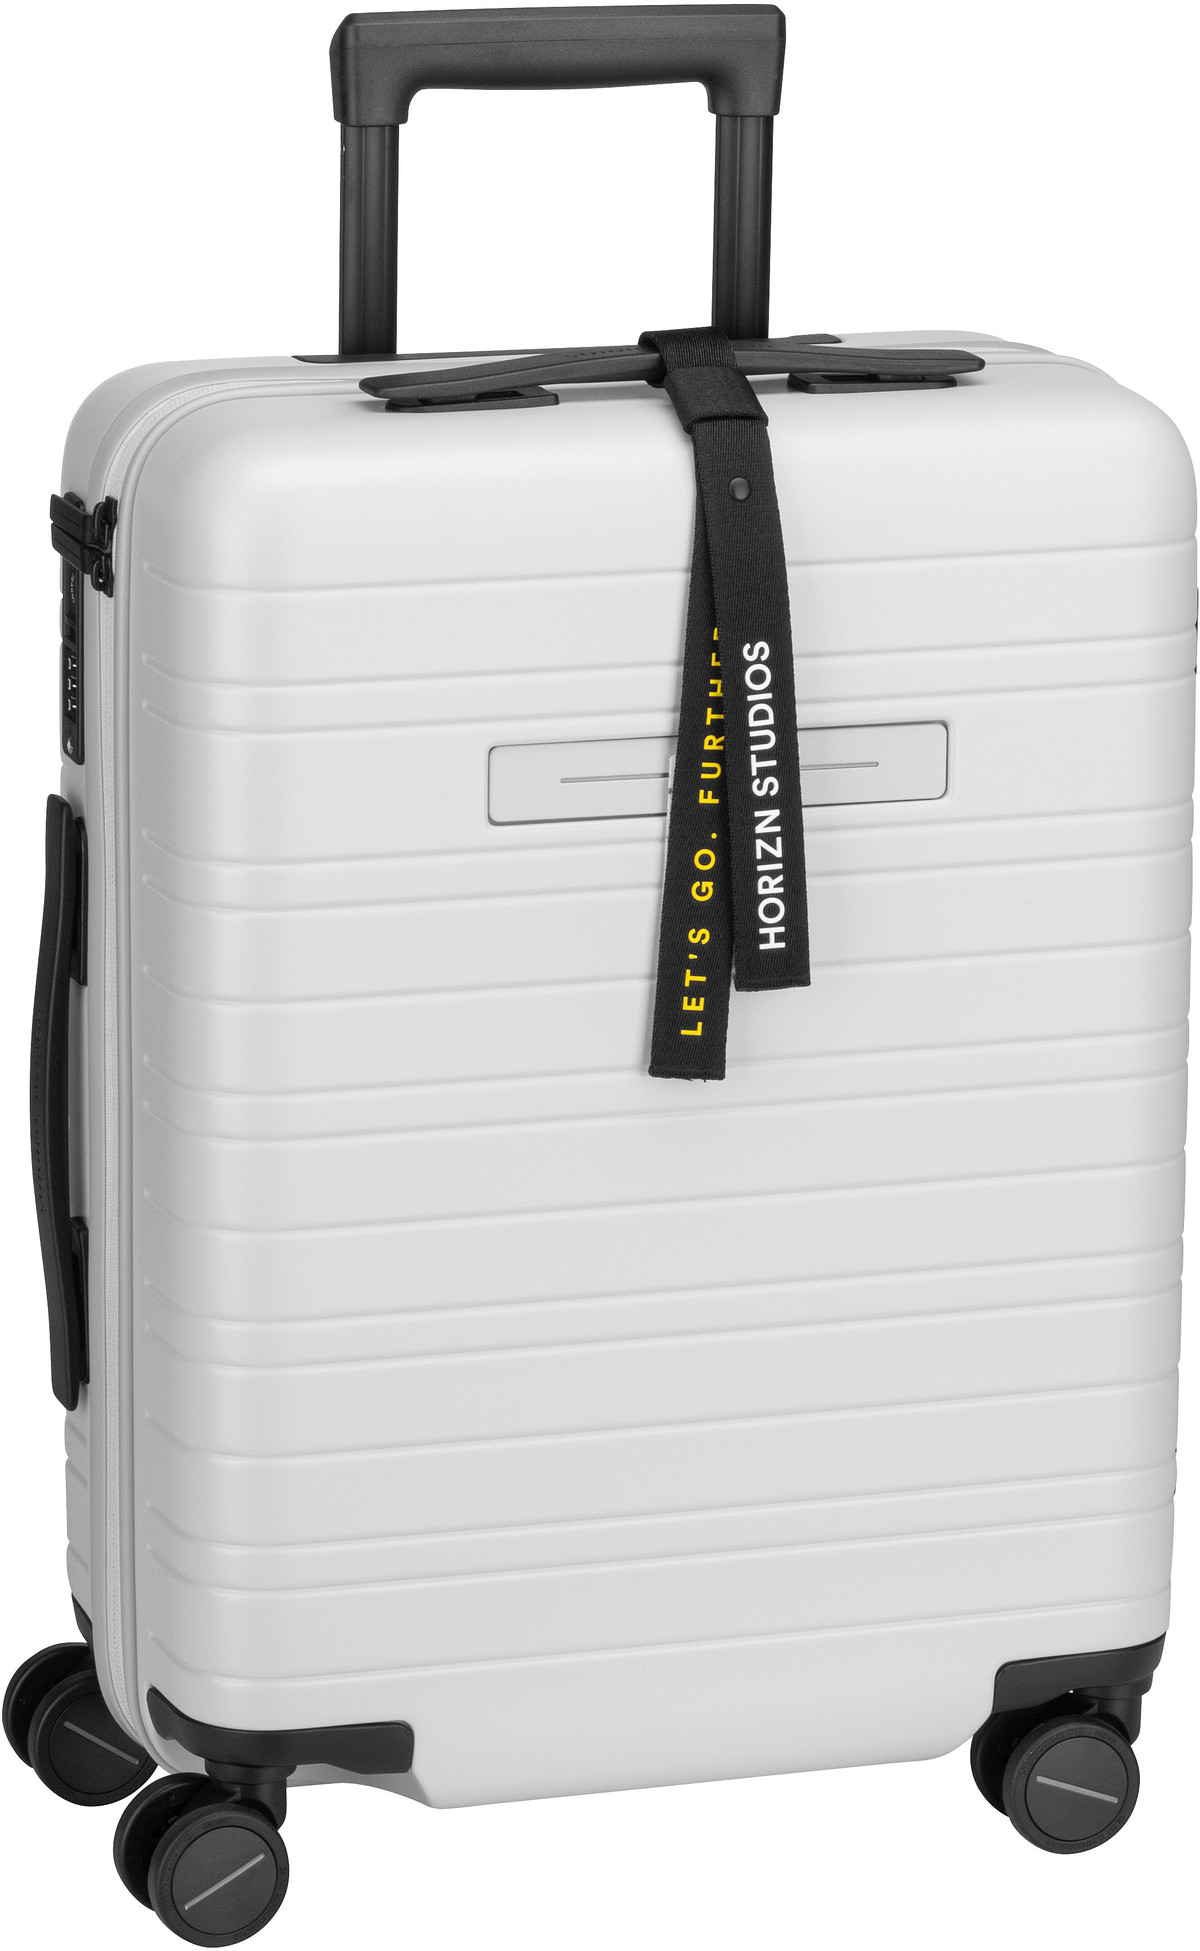 Horizn Studios H5 Essential Cabin Luggage - Light Quartz Grey